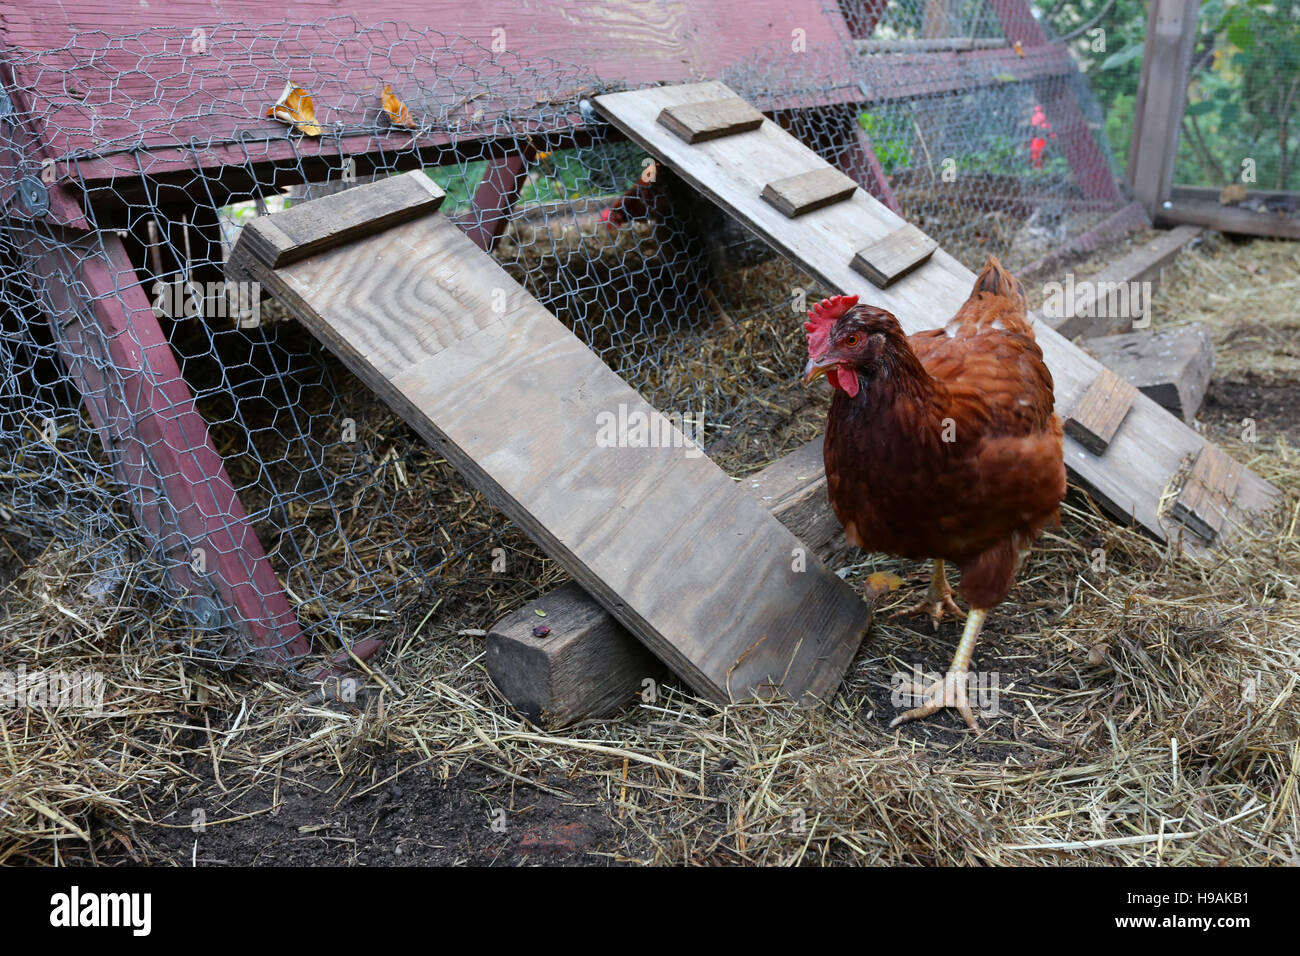 A Rhode Island Red chicken walking around a chicken coop Stock Photo